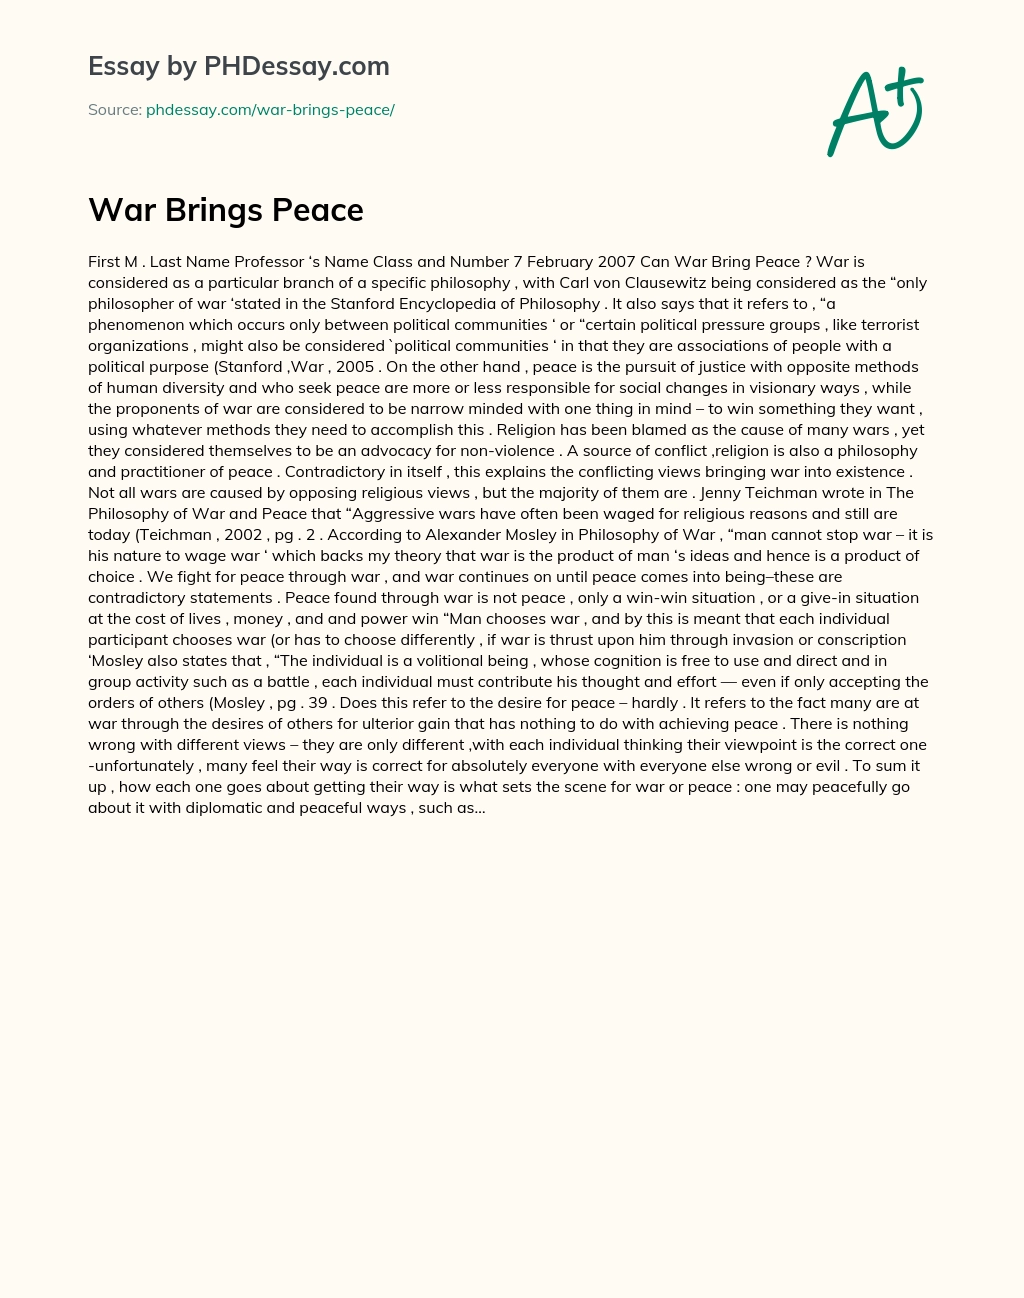 War Brings Peace essay